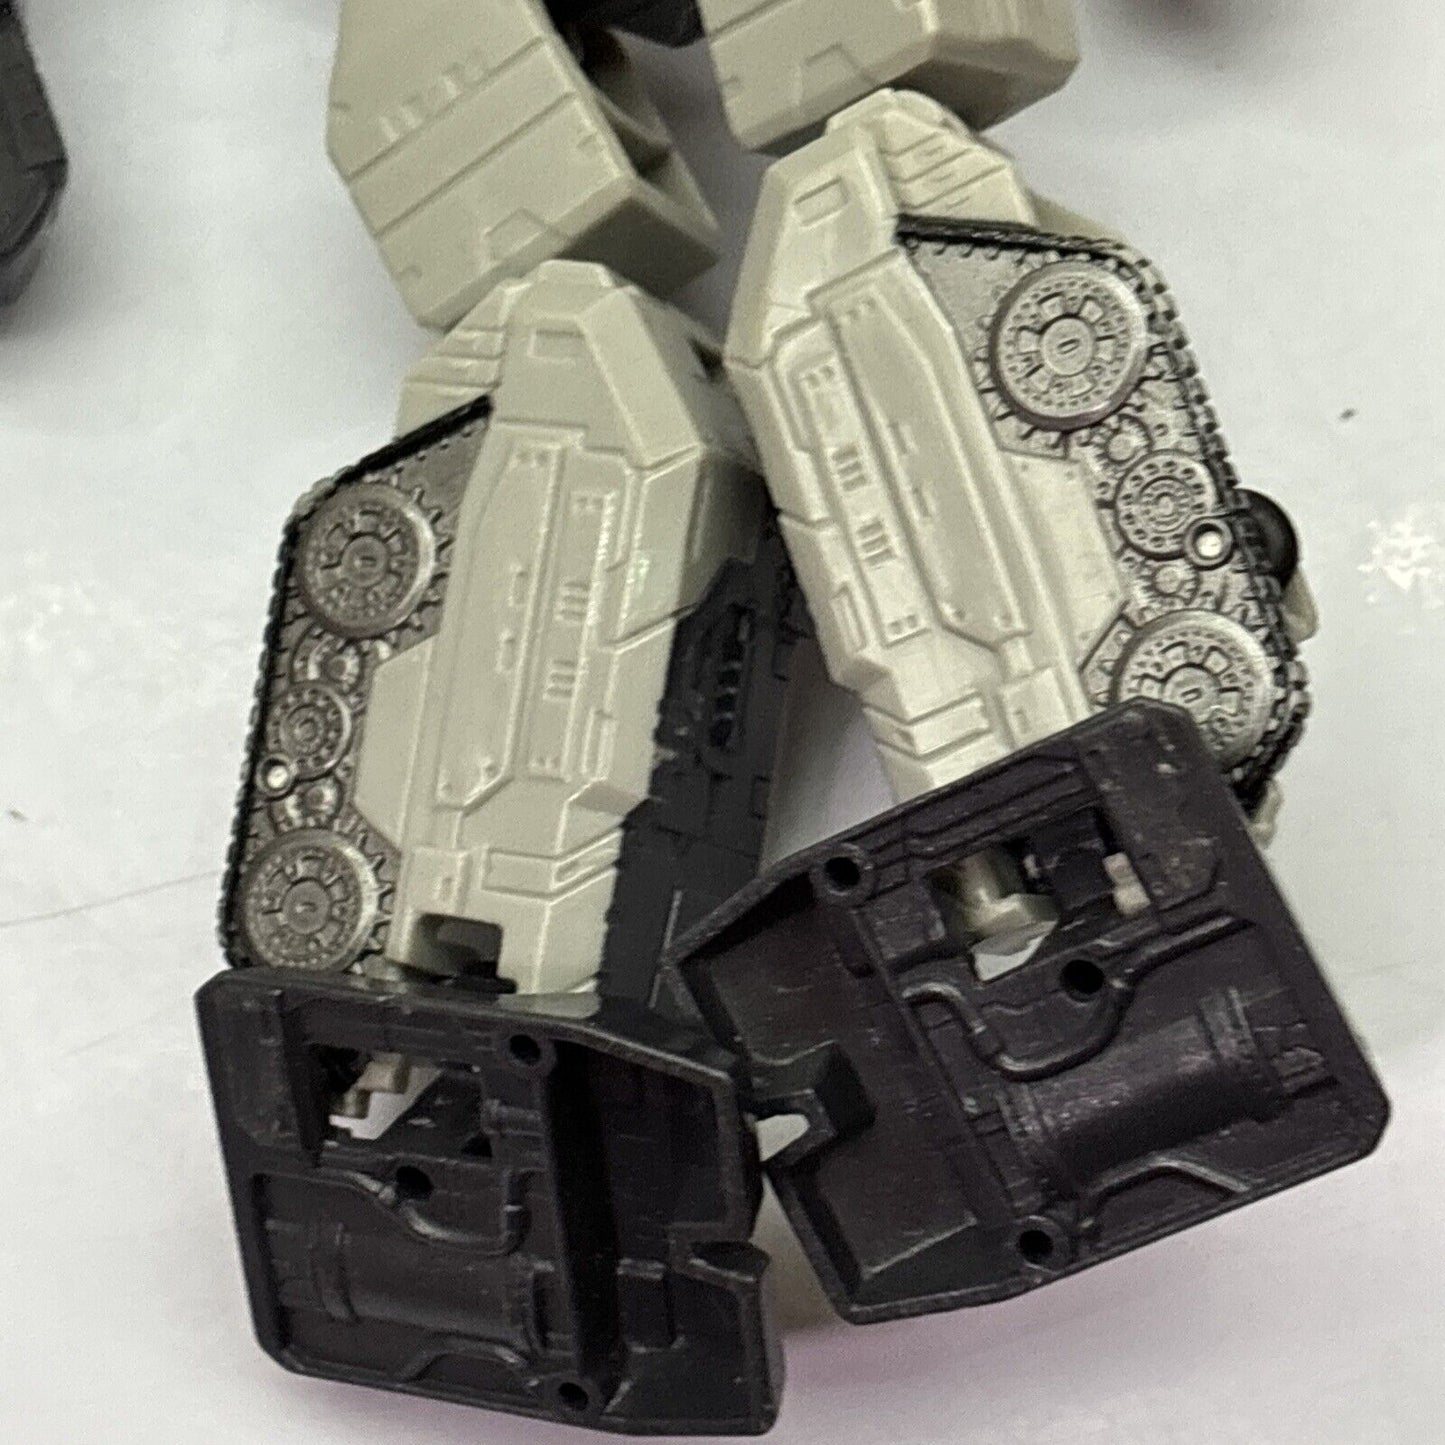 Transformers Optimus Prime & Megatron Figure C-295D E4302 E0771 *Missing Parts*